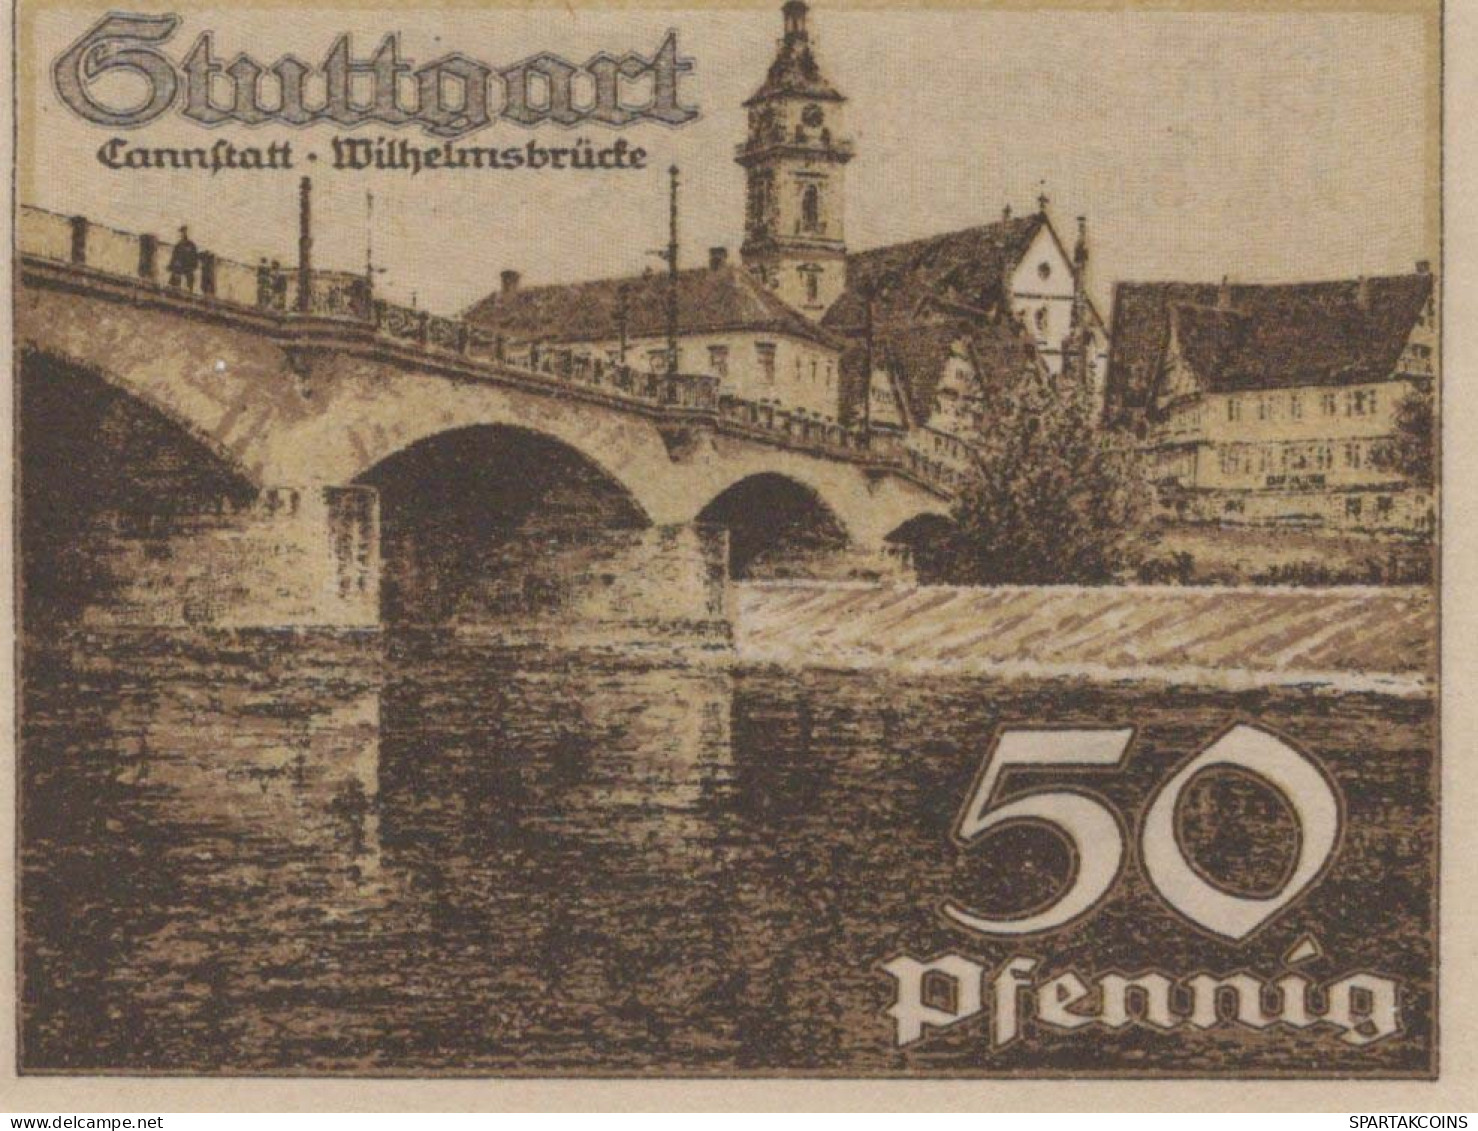 50 PFENNIG 1921 Stadt STUTTGART Württemberg UNC DEUTSCHLAND Notgeld #PC439 - [11] Emisiones Locales